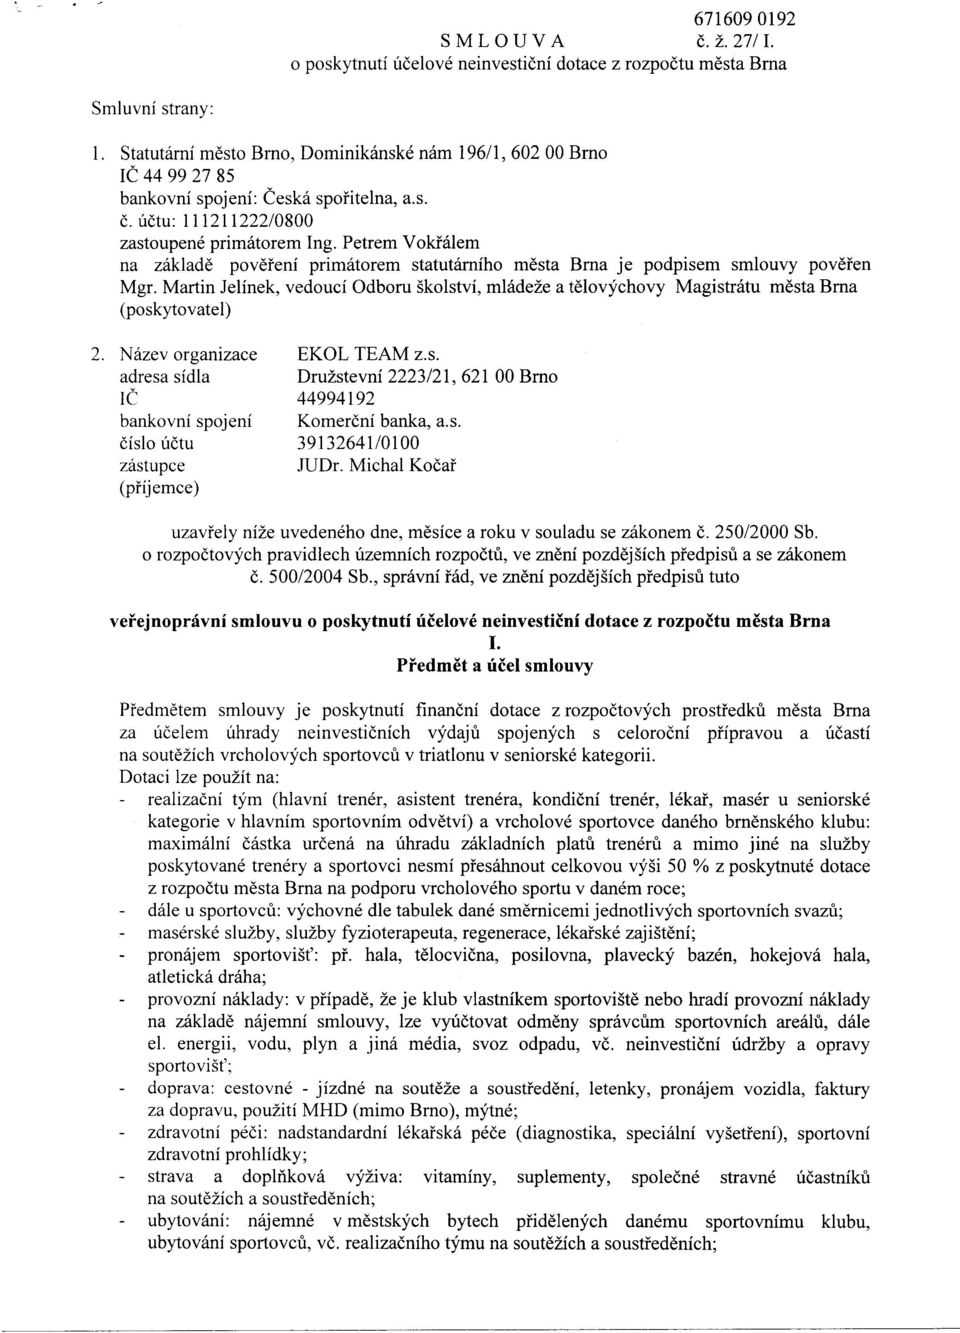 Petrem Vokřálem na základě pověření primátorem statutárního města Brna je podpisem smlouvy pověřen Mgr.